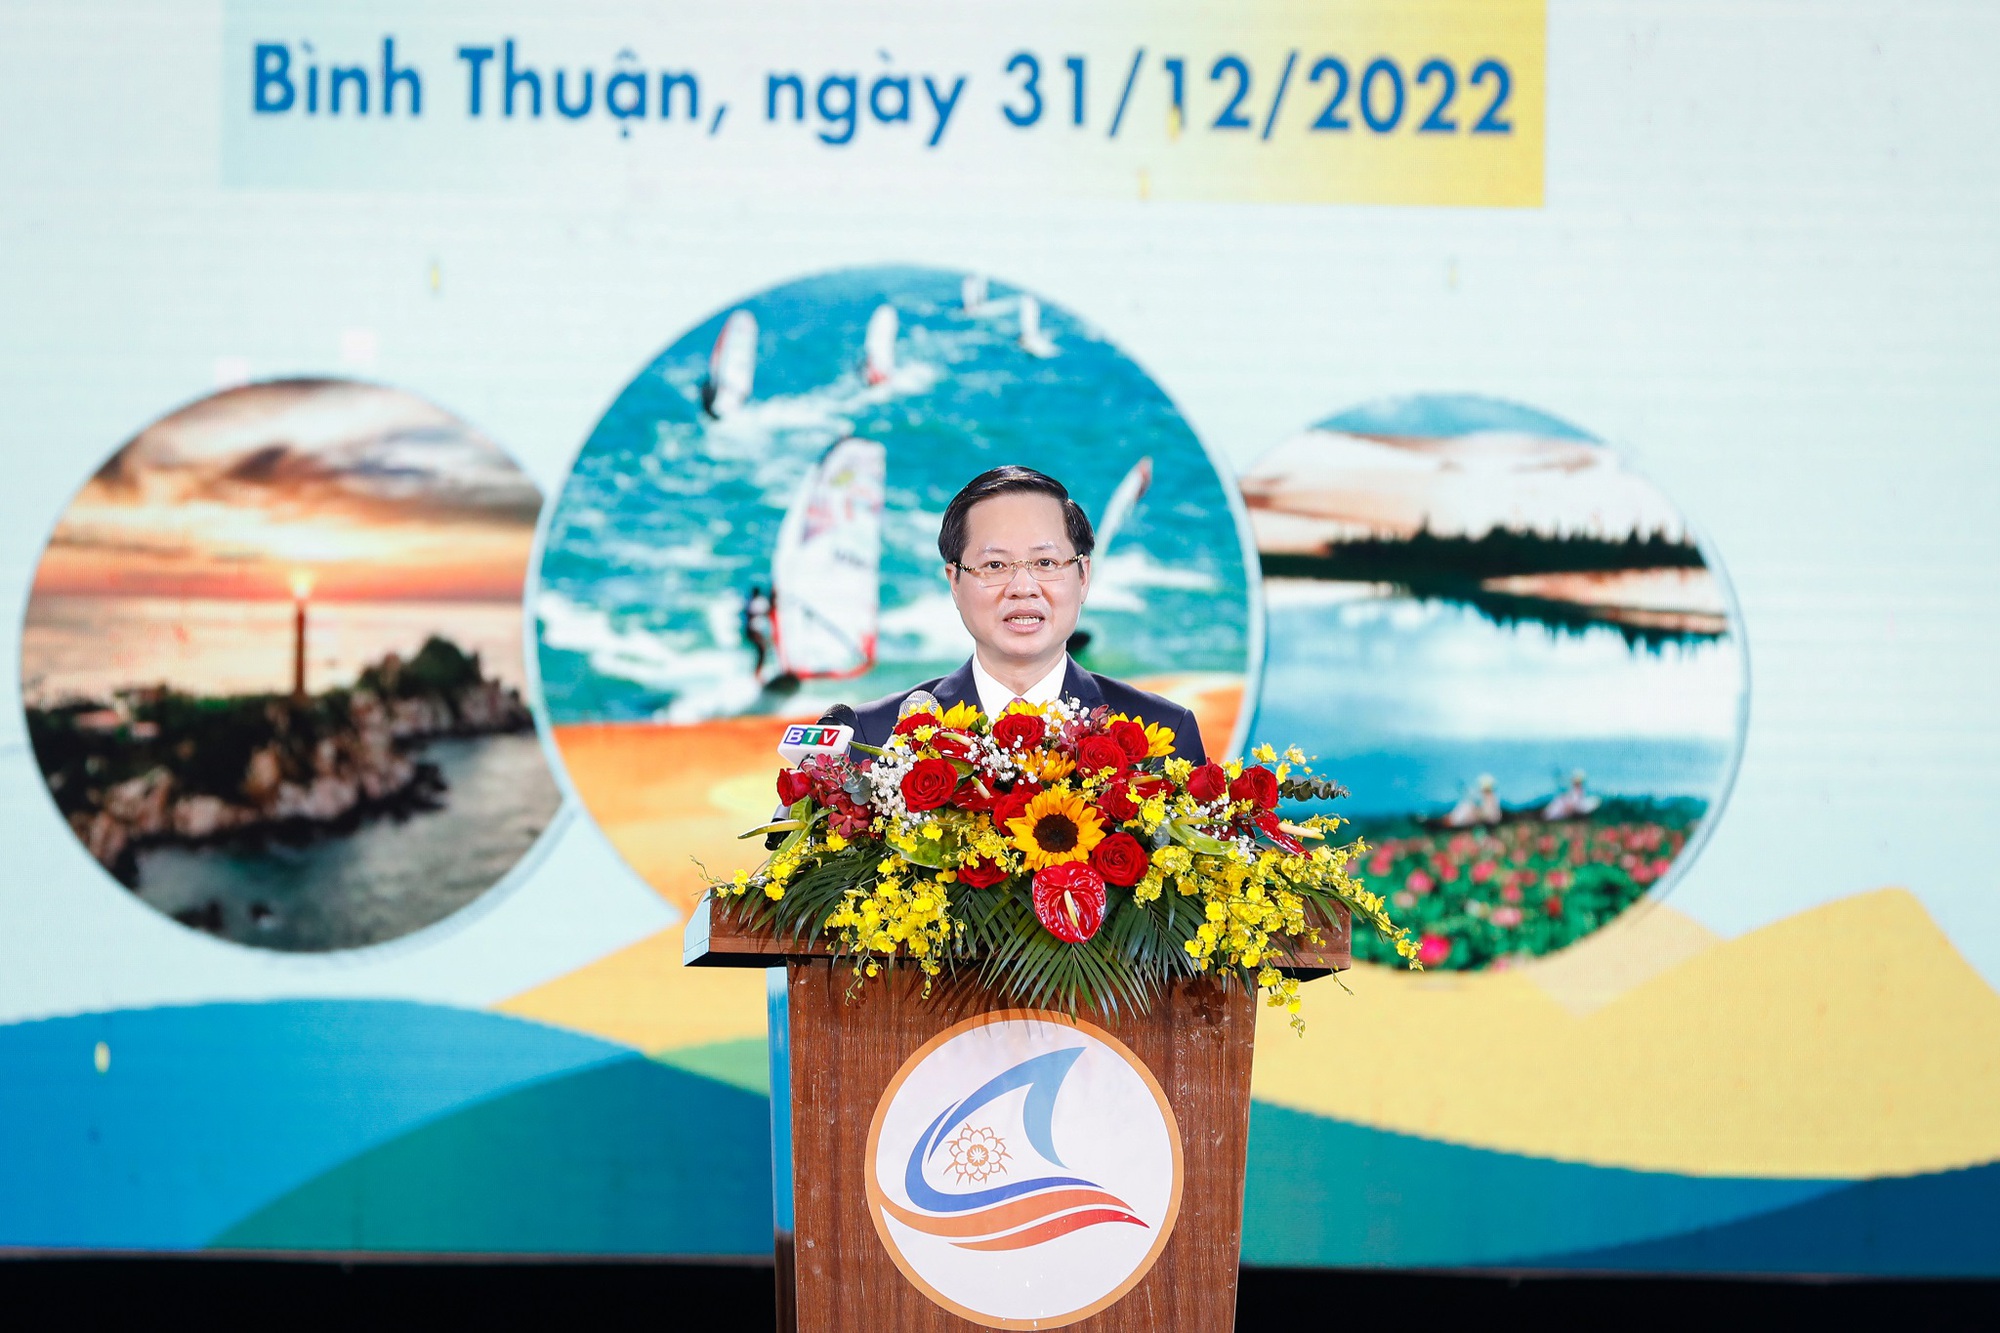 Hàng nghìn người dự Lễ Công bố Năm Du lịch quốc gia 2023 “Bình Thuận - Hội tụ xanh” - Ảnh 2.